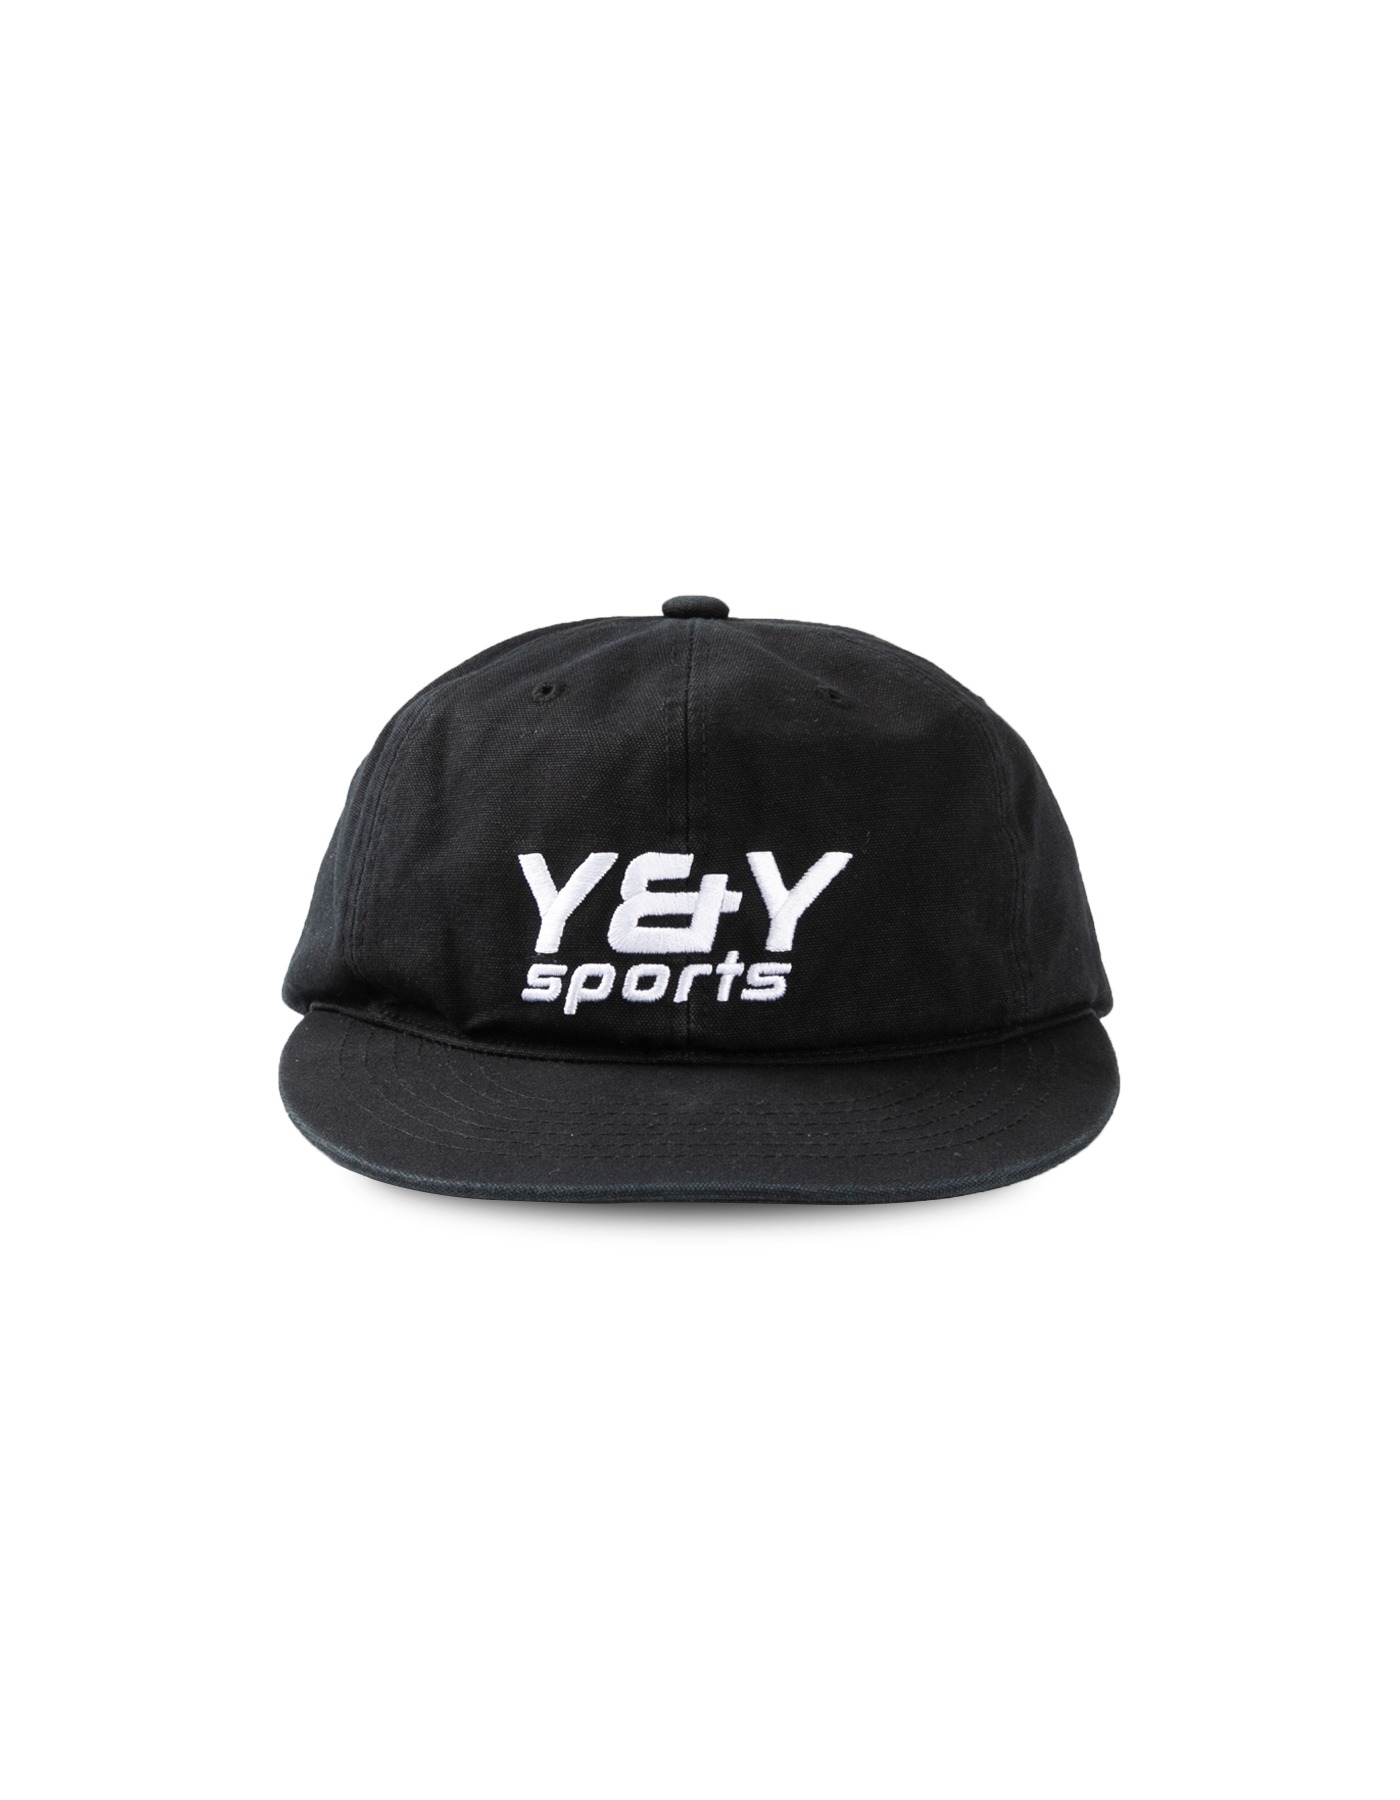 YNY OG SPORTS CAP / Black